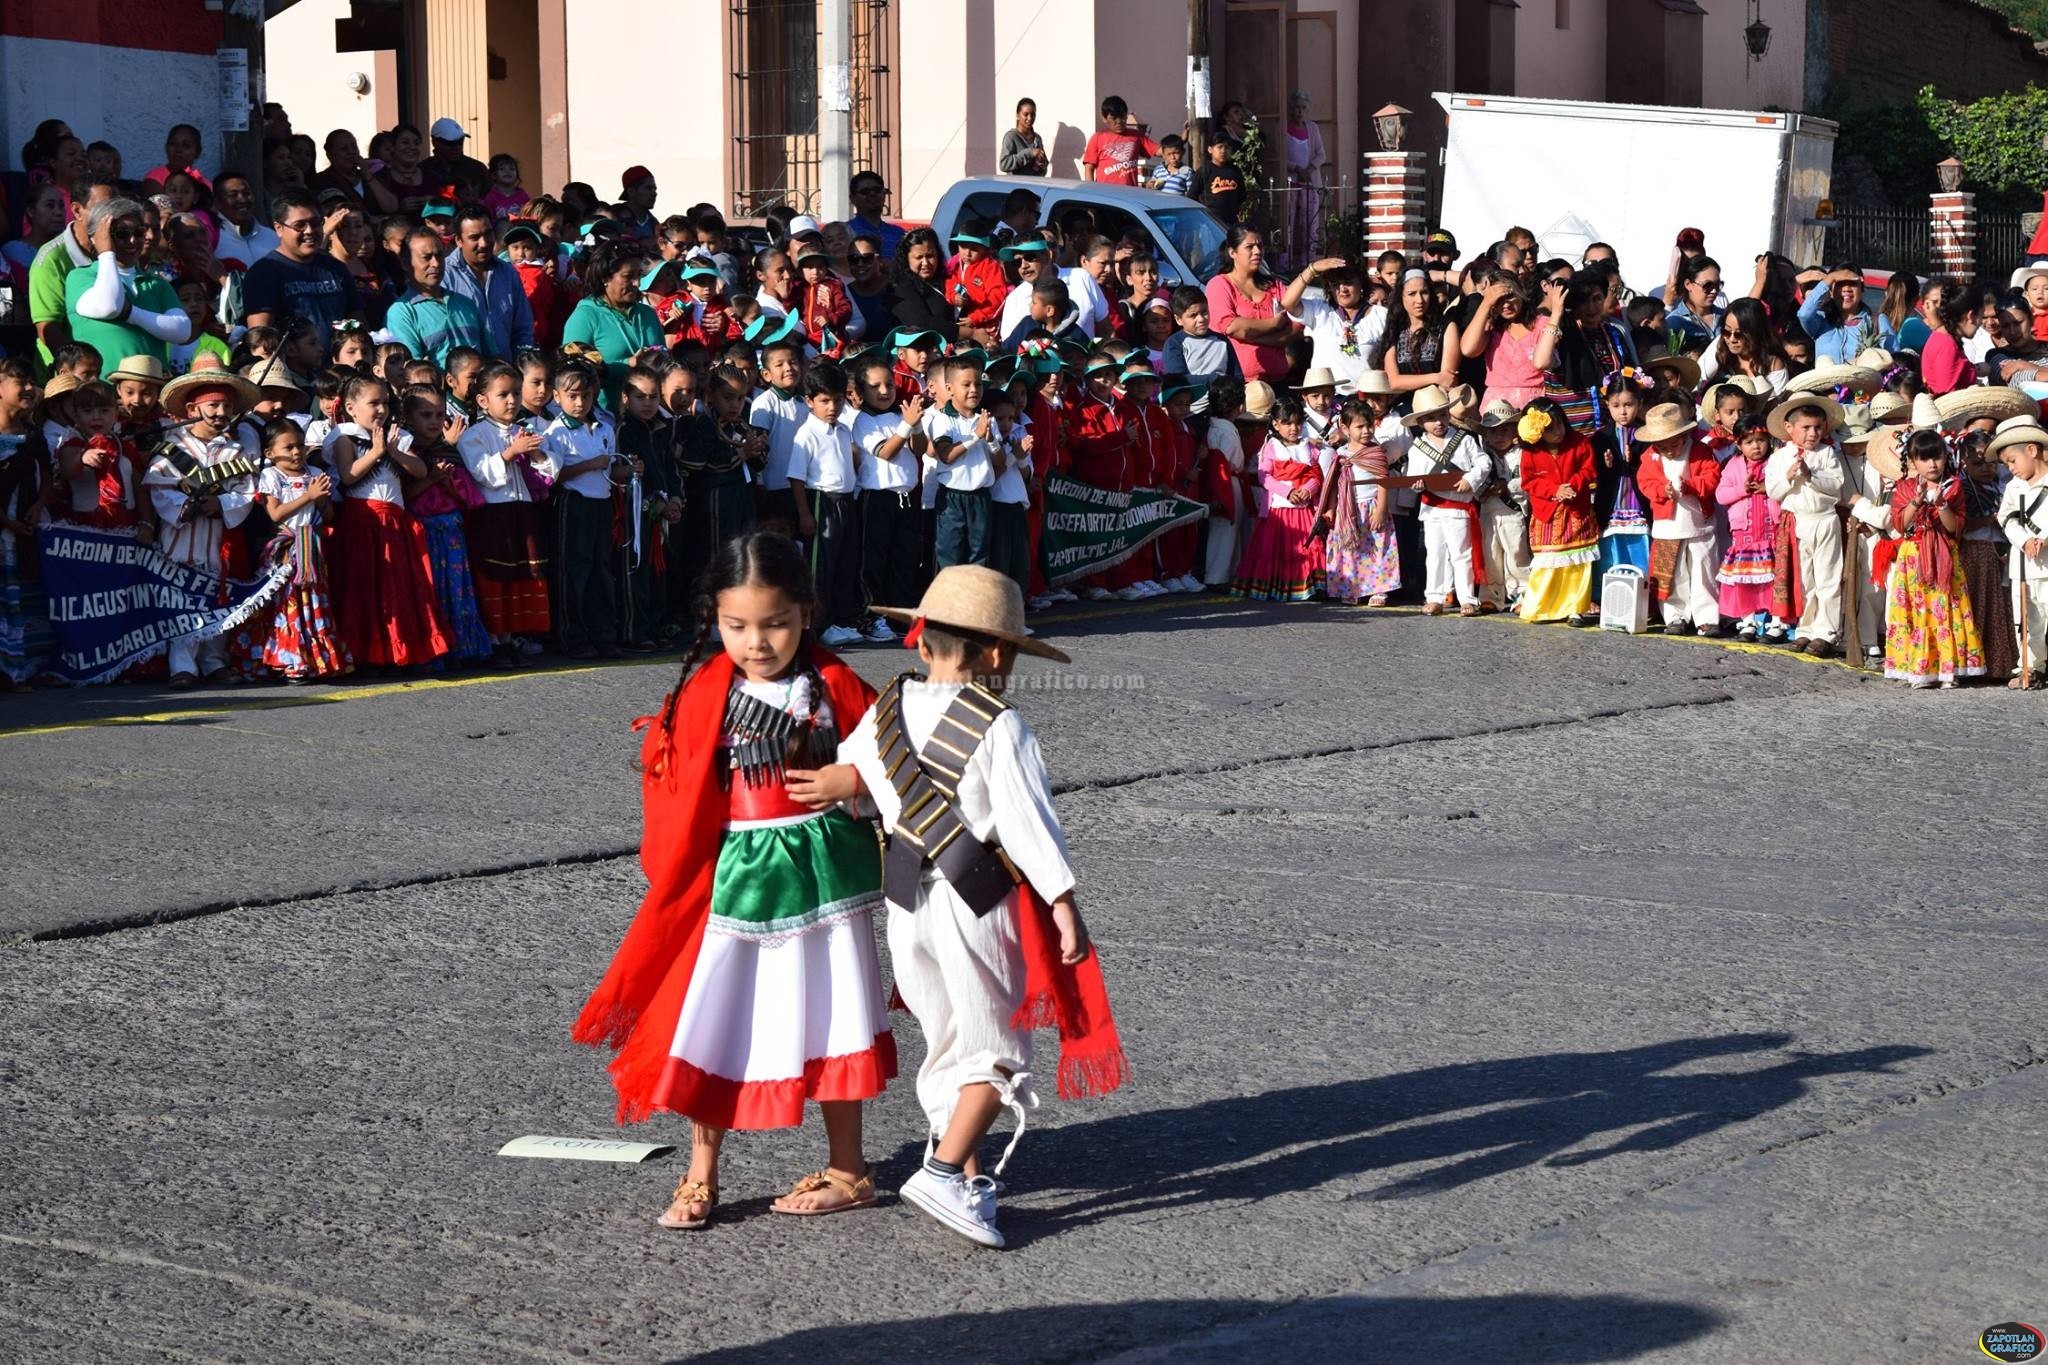 Conmemoran en Zapotiltic el 107 Aniversario de la Revolución Mexicana